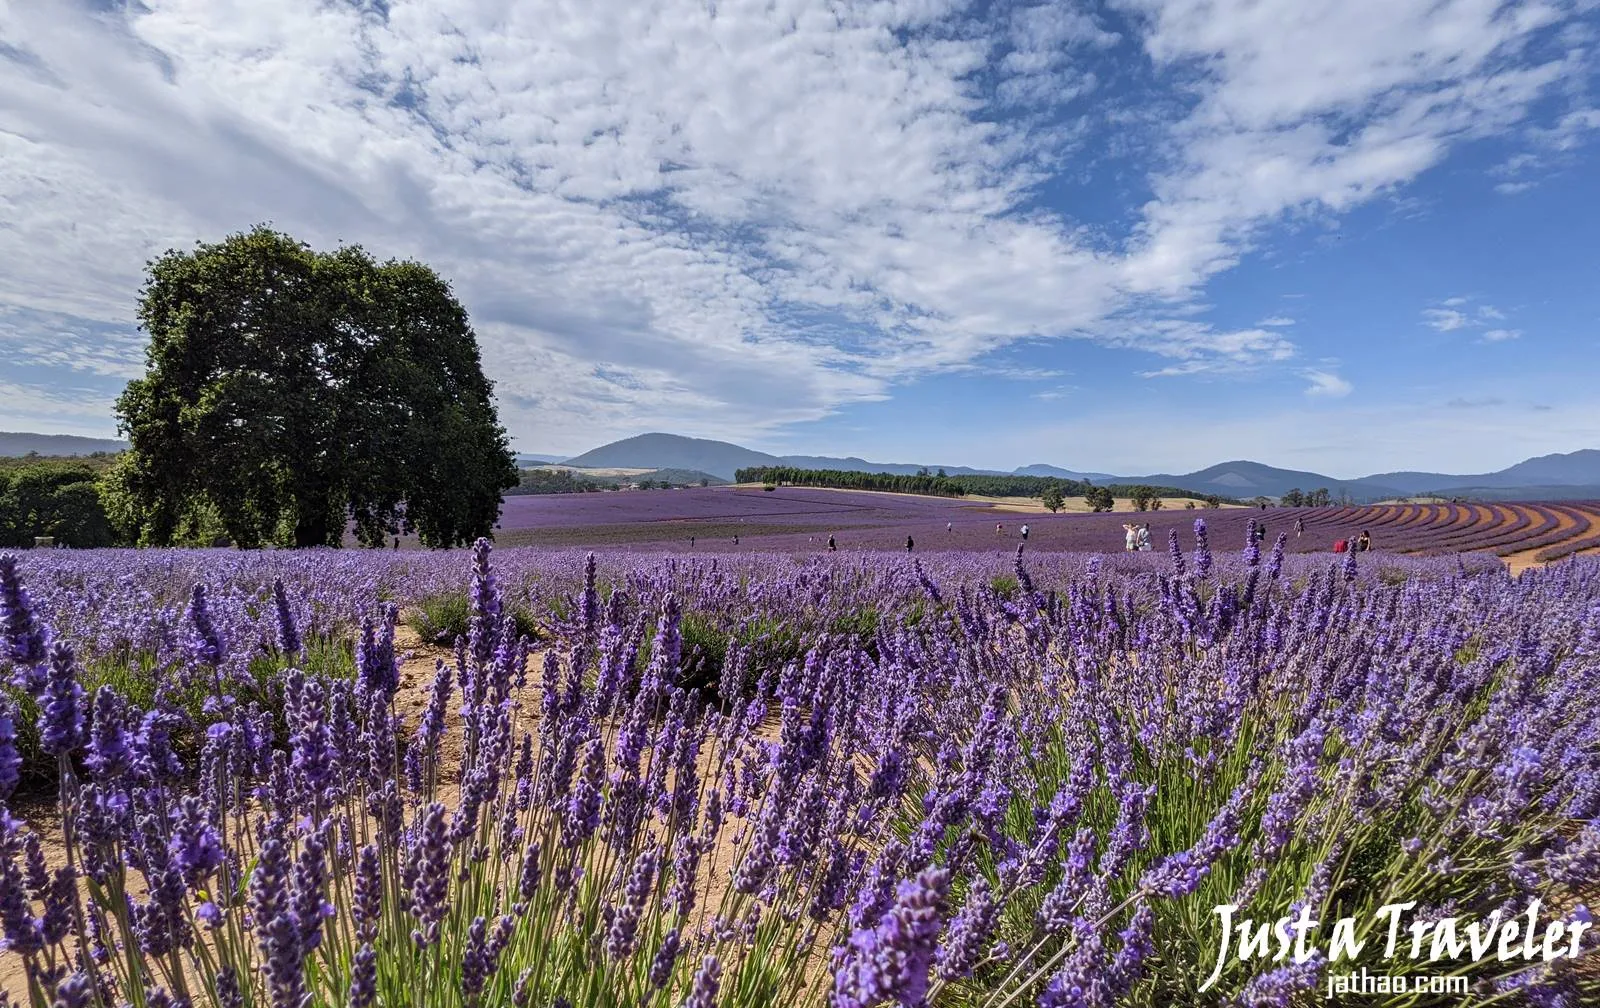 塔斯馬尼亞-塔斯馬尼亞景點-推薦-布萊德斯托薰衣草農場-塔斯馬尼亞自由行景點-塔斯馬尼亞旅遊景點-澳洲-Tasmania-Tourist-Attraction-Bridestowe-Lavender-Farm-Travel-Australia